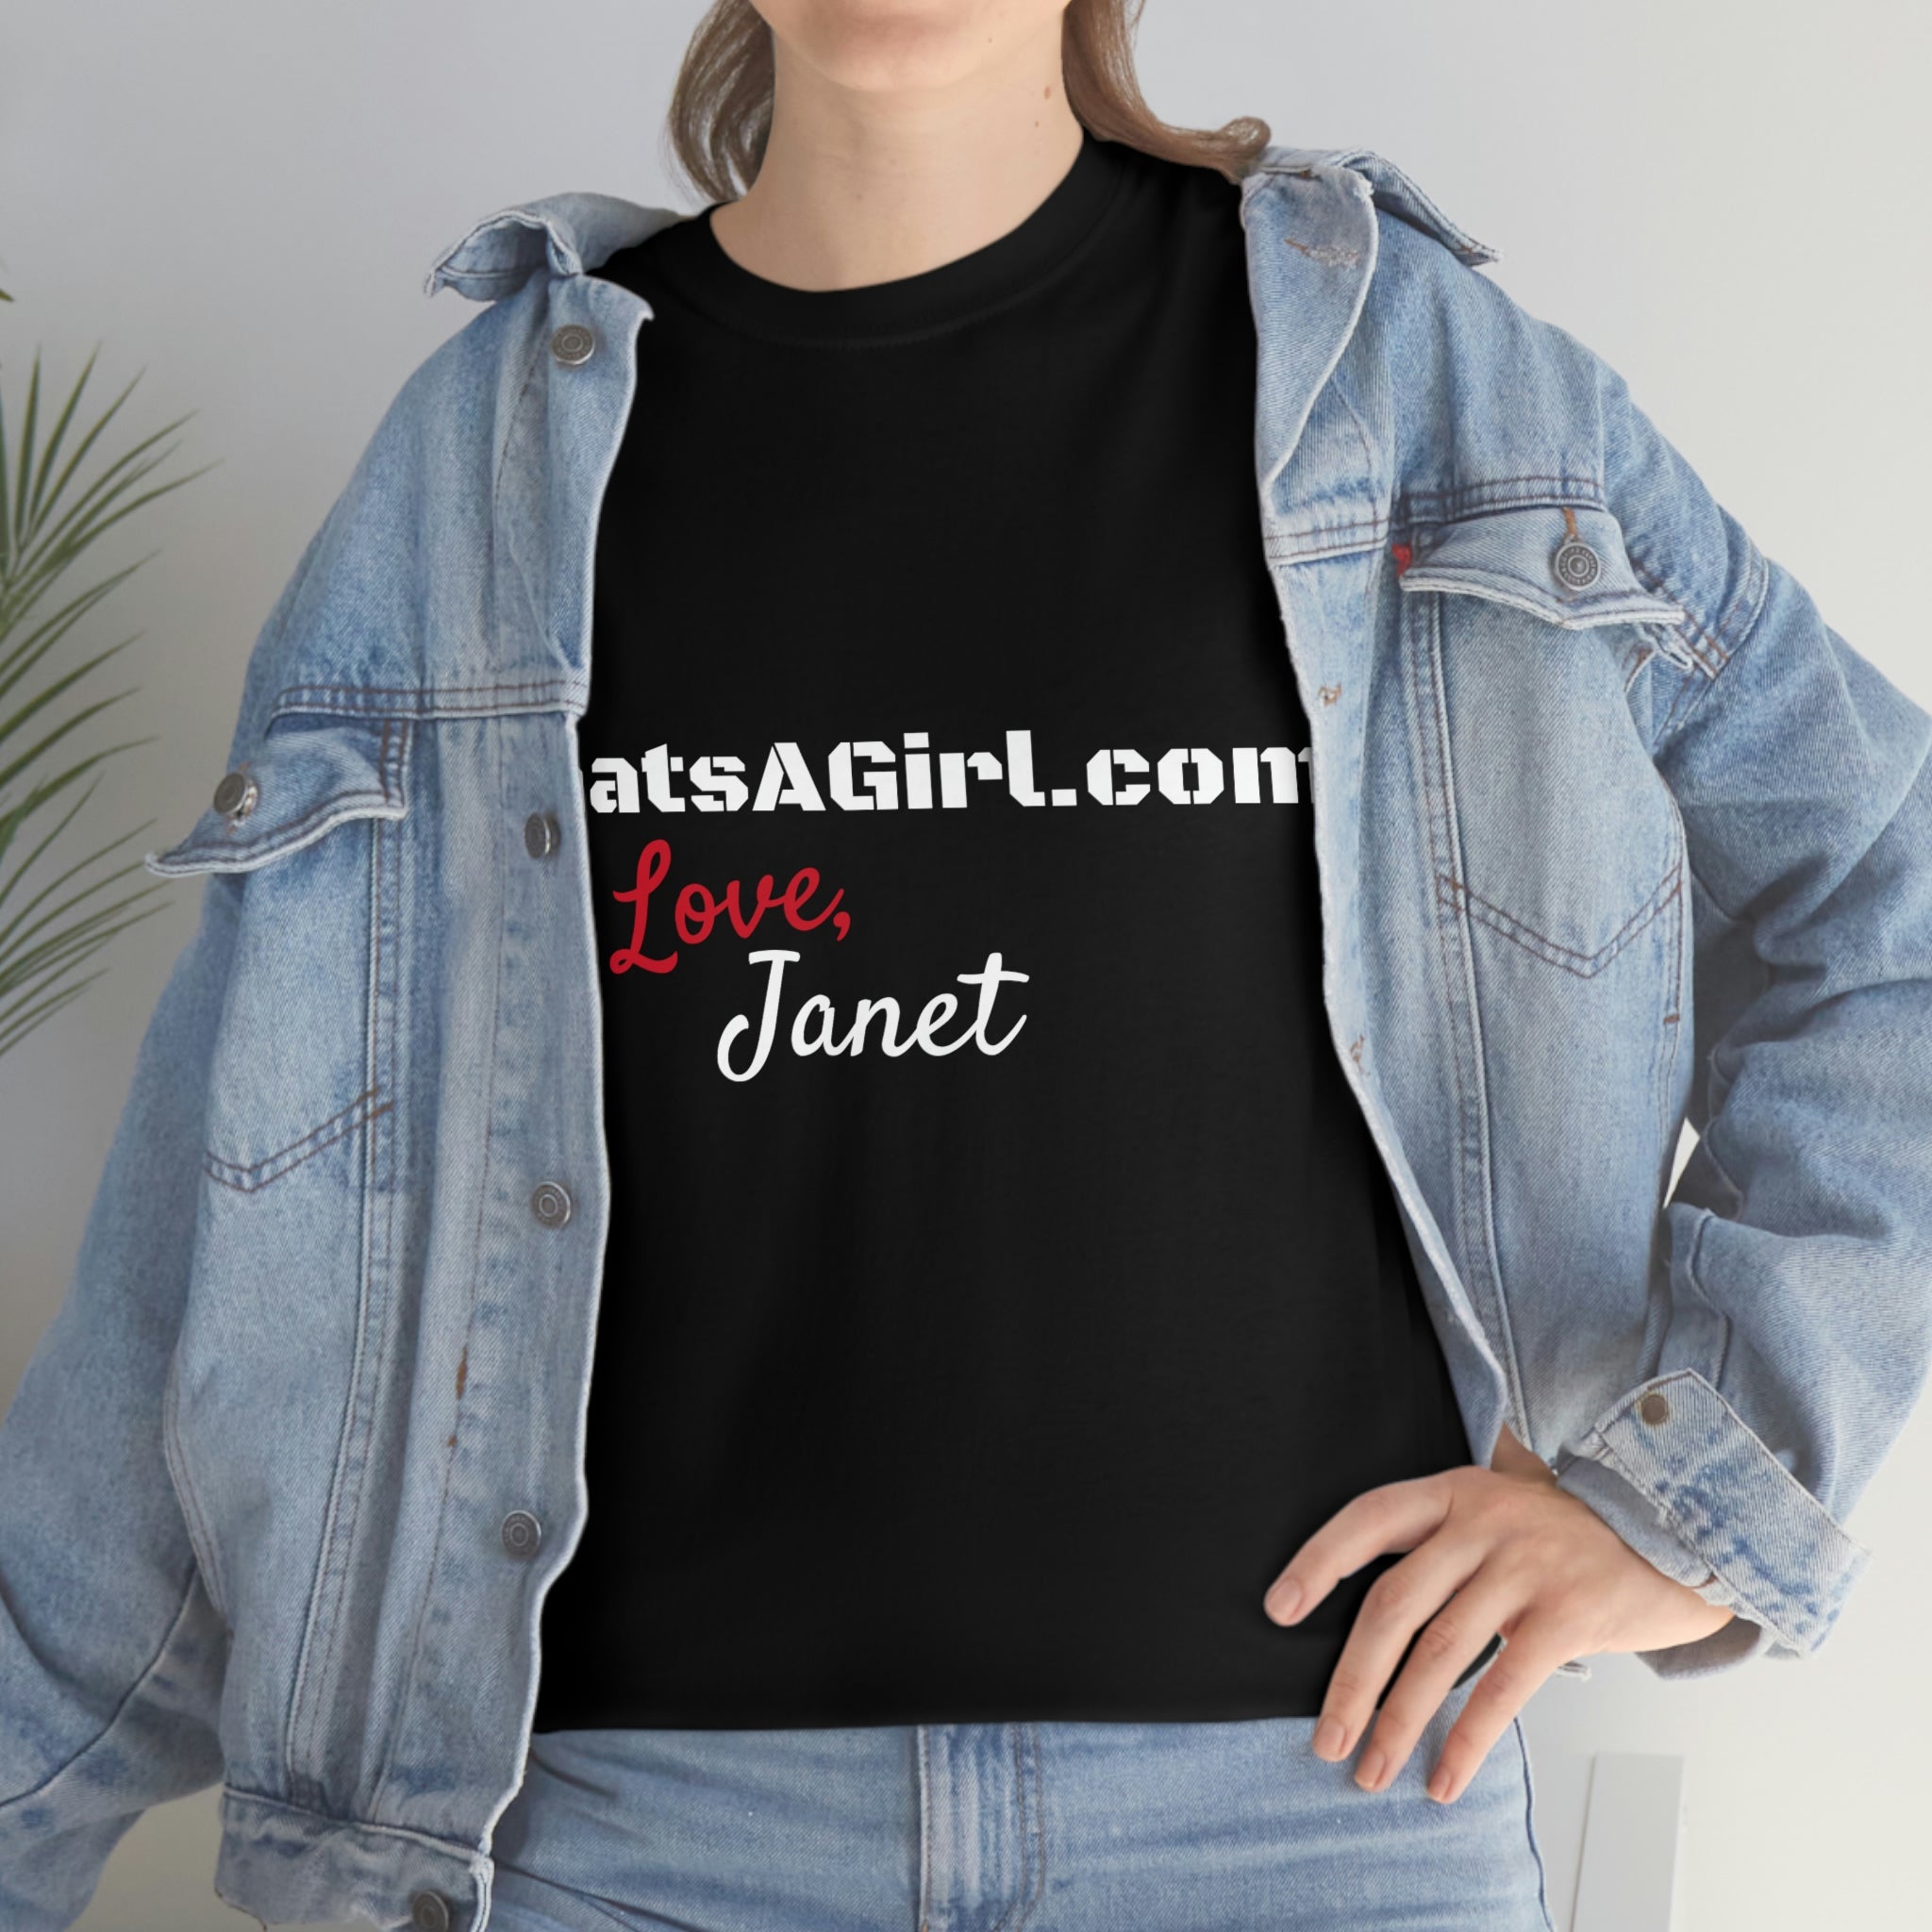 #WAGTD Janet T-SHIRT